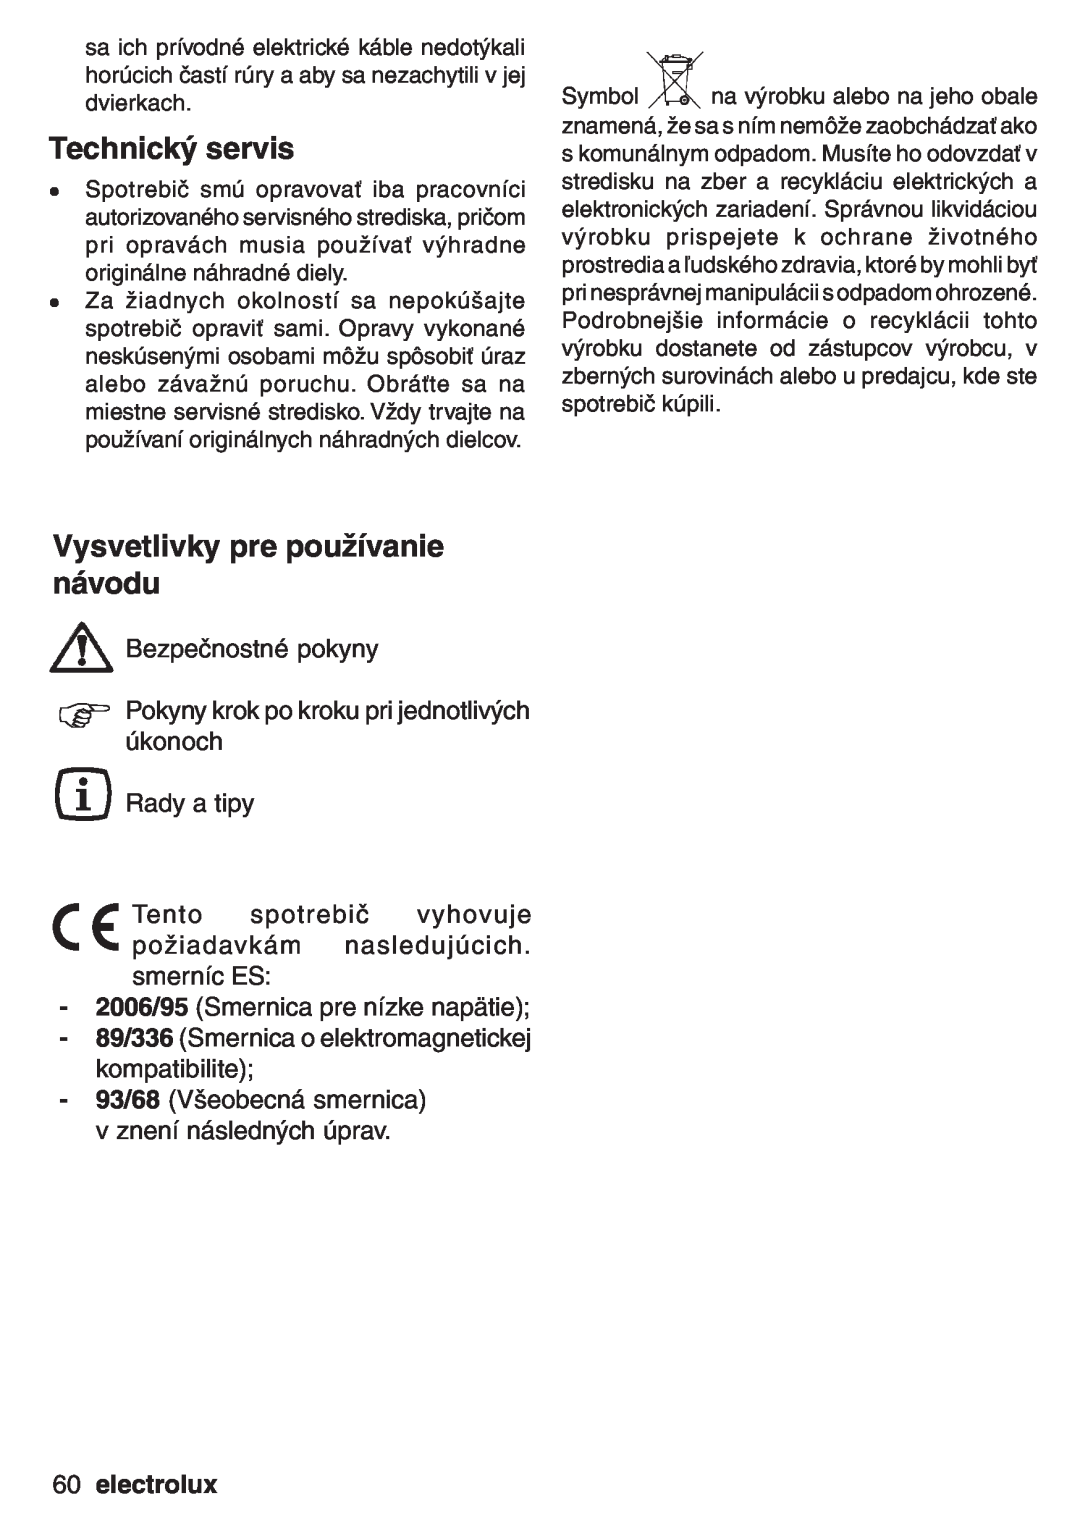 Electrolux EOB 53003 user manual Technický servis, Vysvetlivky pre používanie návodu, electrolux 